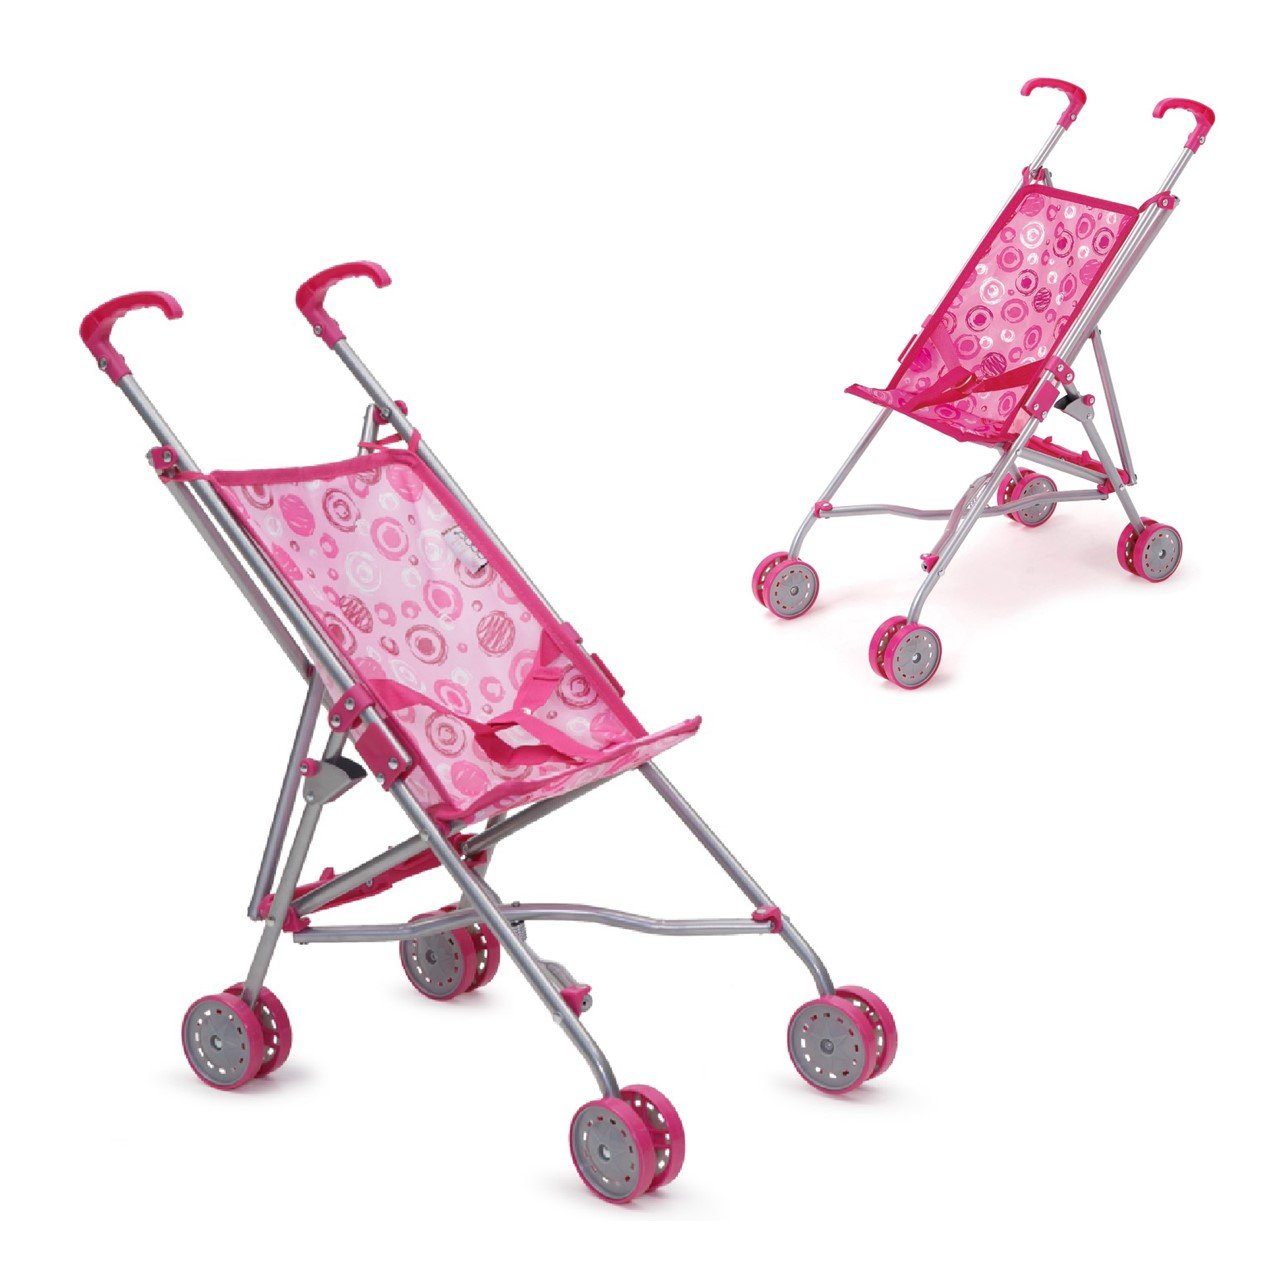 Moni Puppenbuggy »Puppenbuggy, Puppenwagen S9302«, rosa, pink mit  Doppelräder, Schiebehöhe 51 cm online kaufen | OTTO